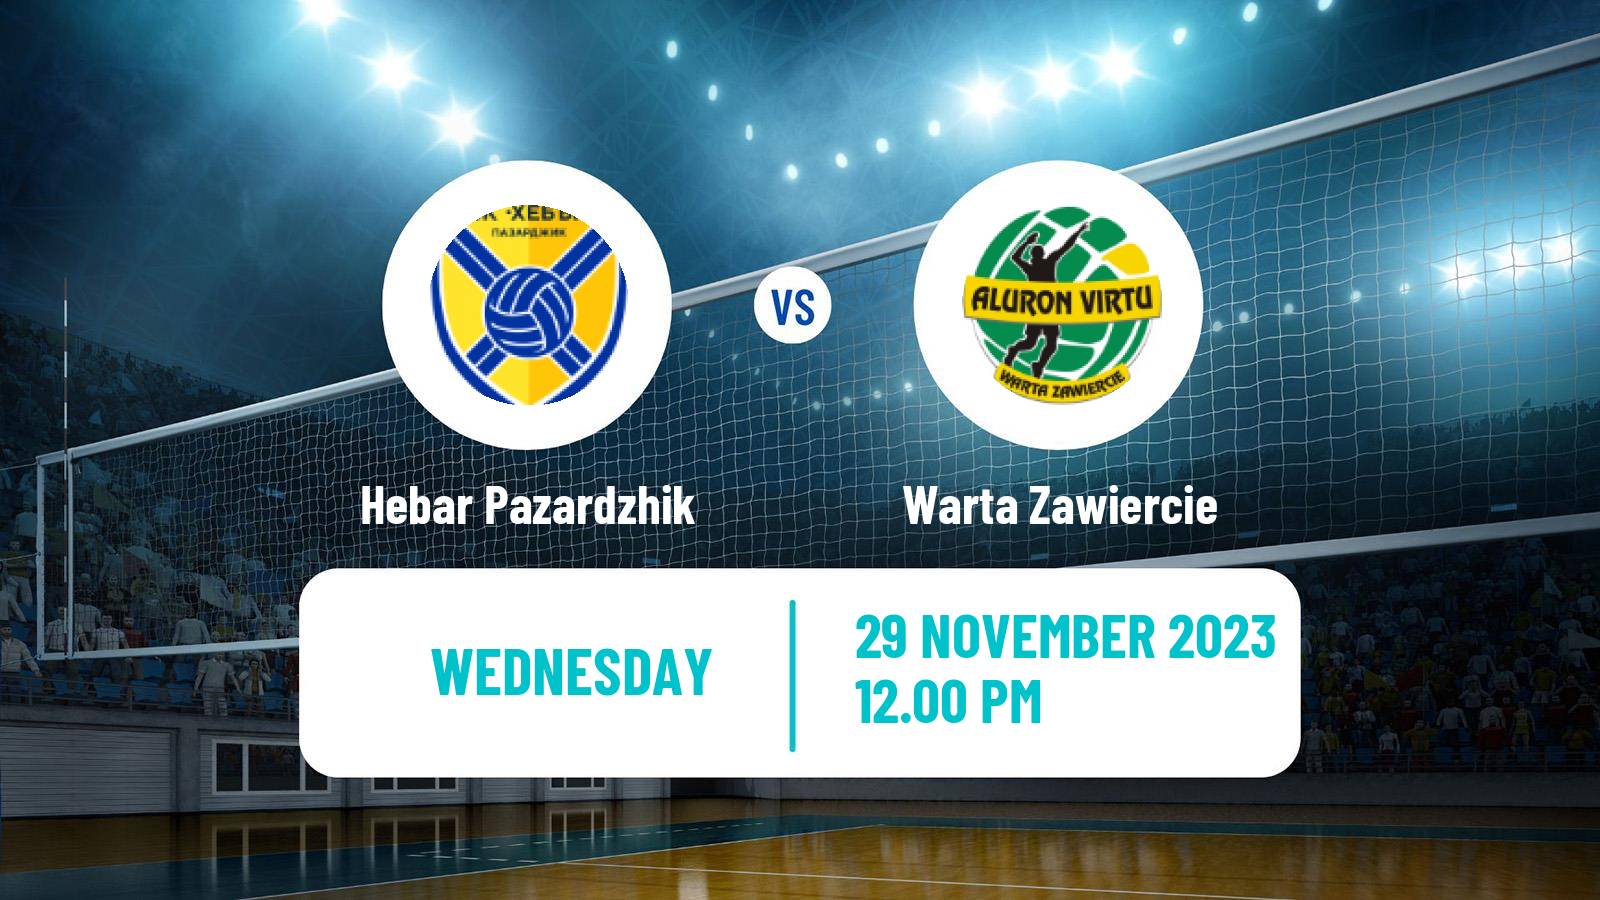 Volleyball CEV Cup Hebar Pazardzhik - Warta Zawiercie